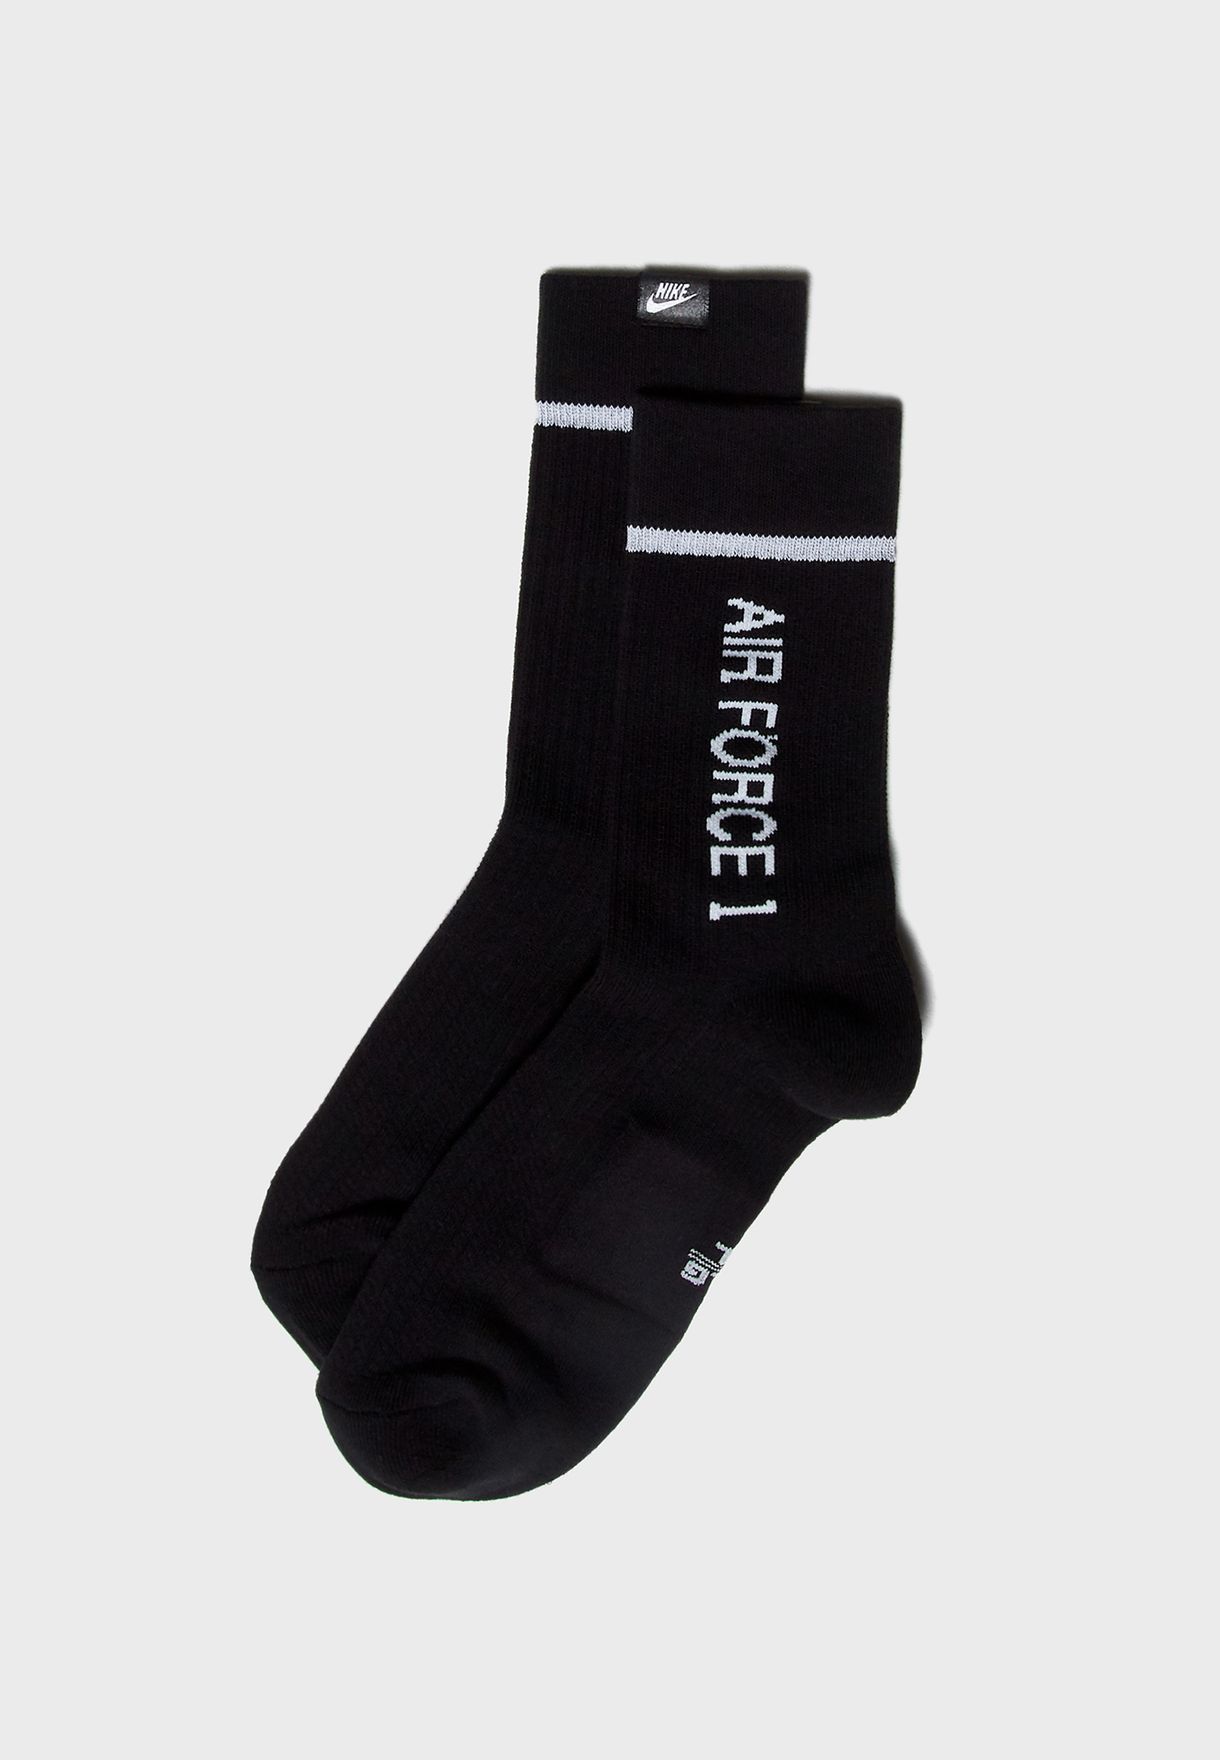 nike air force socks